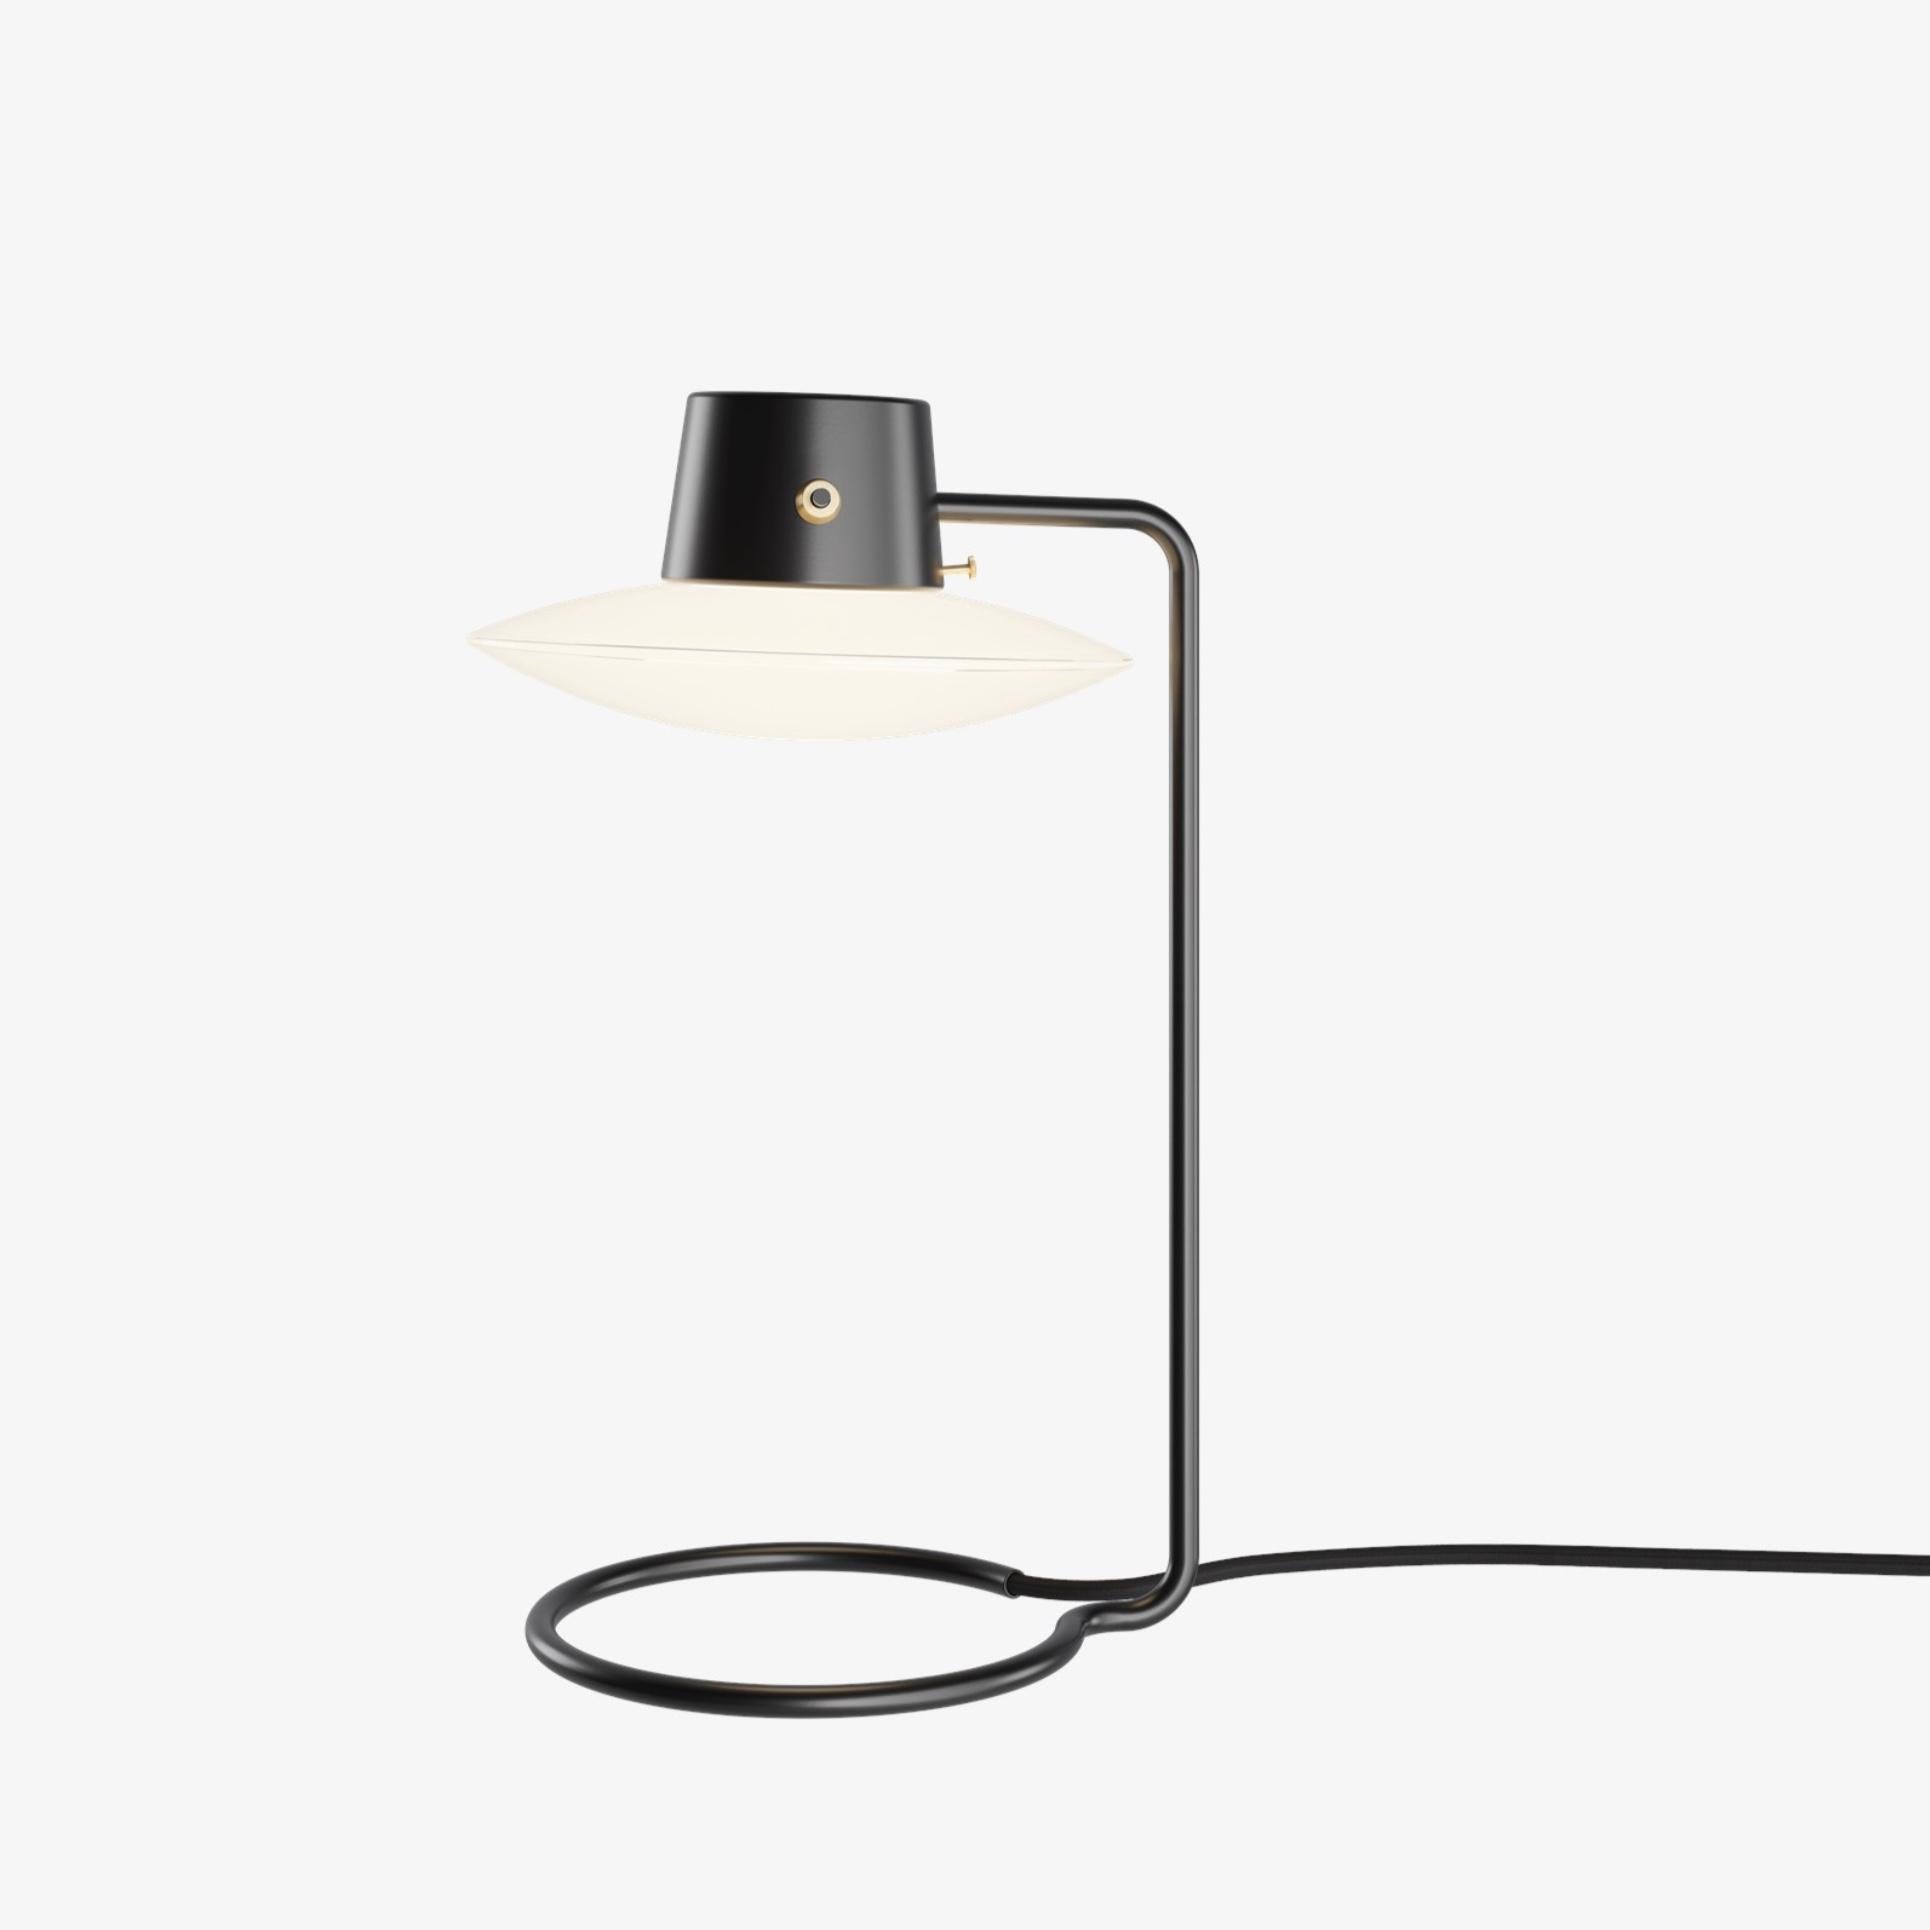 Lampe de table AJ Oxford 410 mm de Arne Jacobsen en noir et opaline pour Louis Poulsen. Conçu en 1963, production actuelle.

La lampe de table AJ Oxford a une expression graphique épurée, qui reflète l'architecture du St Catherine's College, à